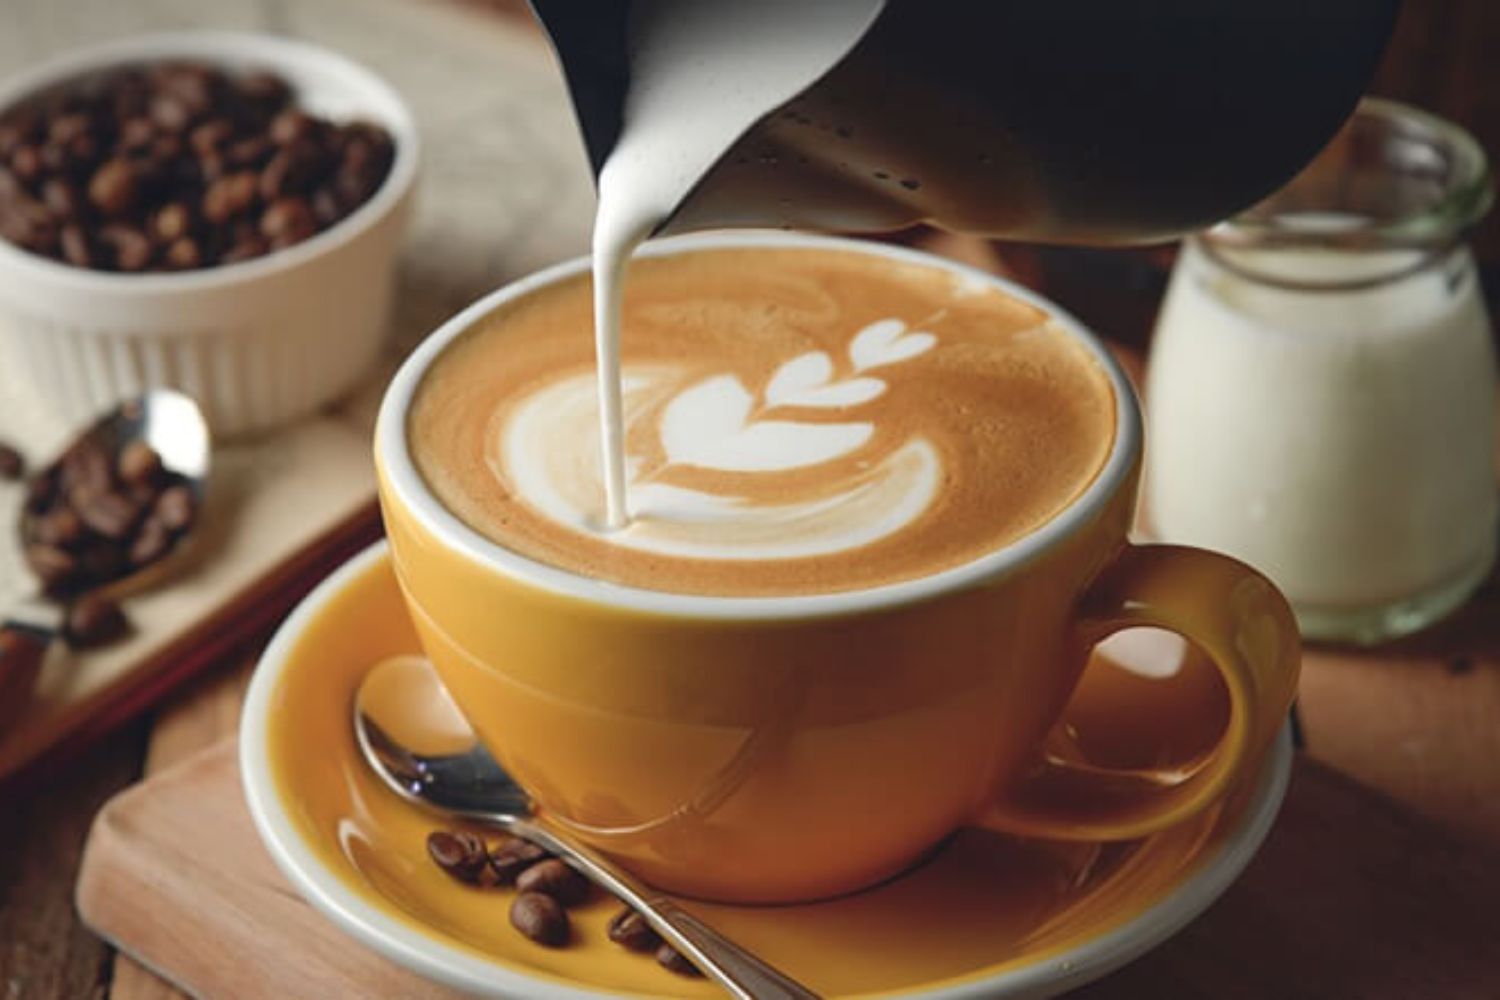 Latte là bản giao hưởng giữa espresso mạnh mẽ hòa quyện cùng sữa nóng